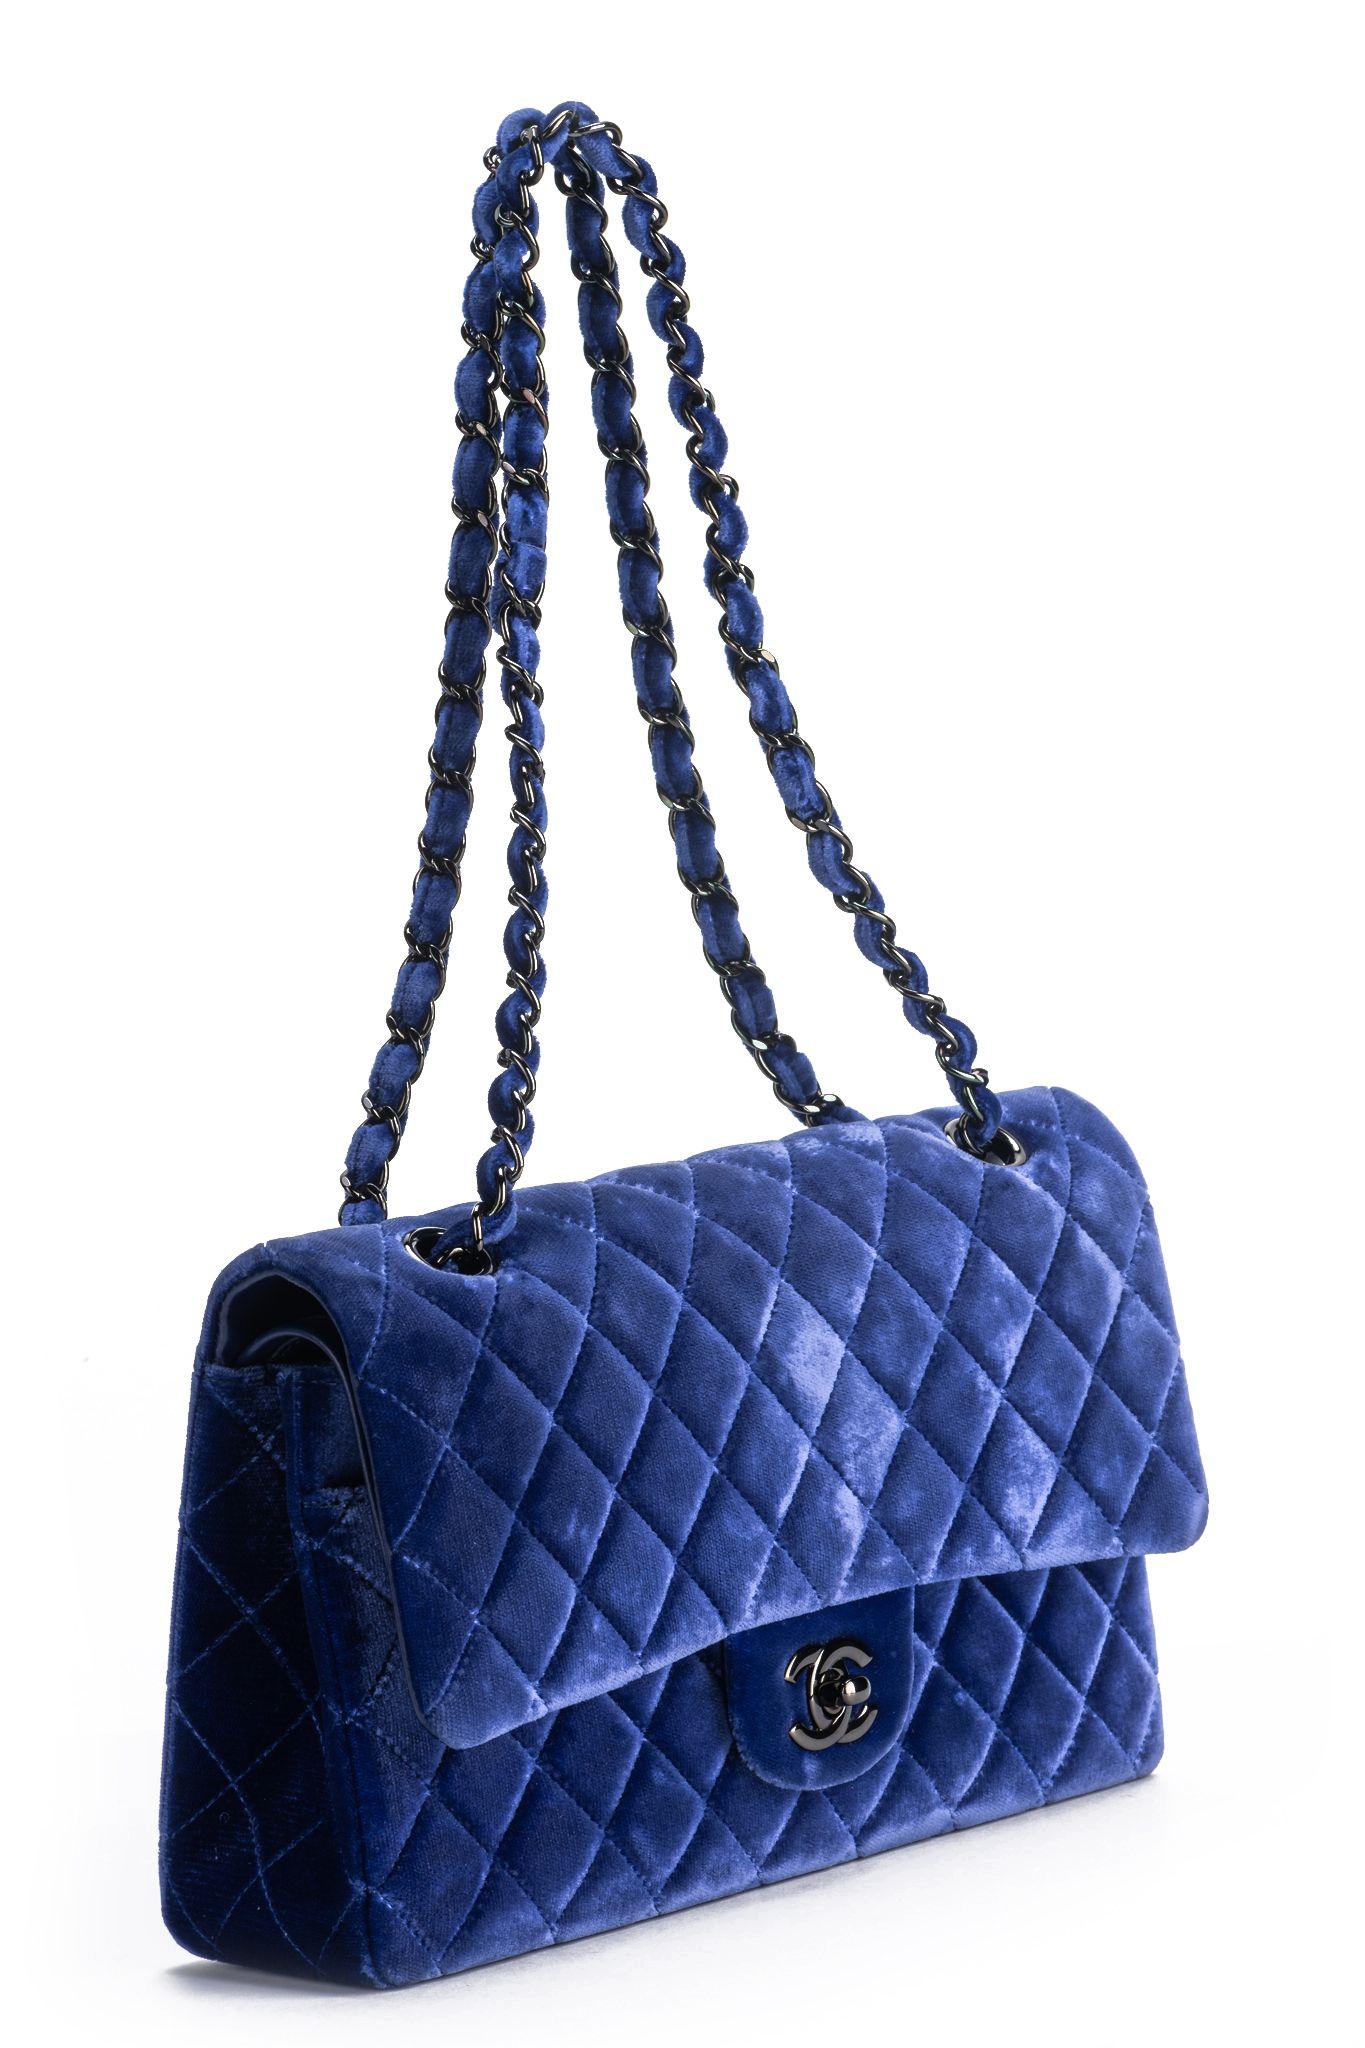 Chanel excellent état, double rabat en velours bleu, doublure en cuir bleu et matériel noir.  Epaule tombante 9